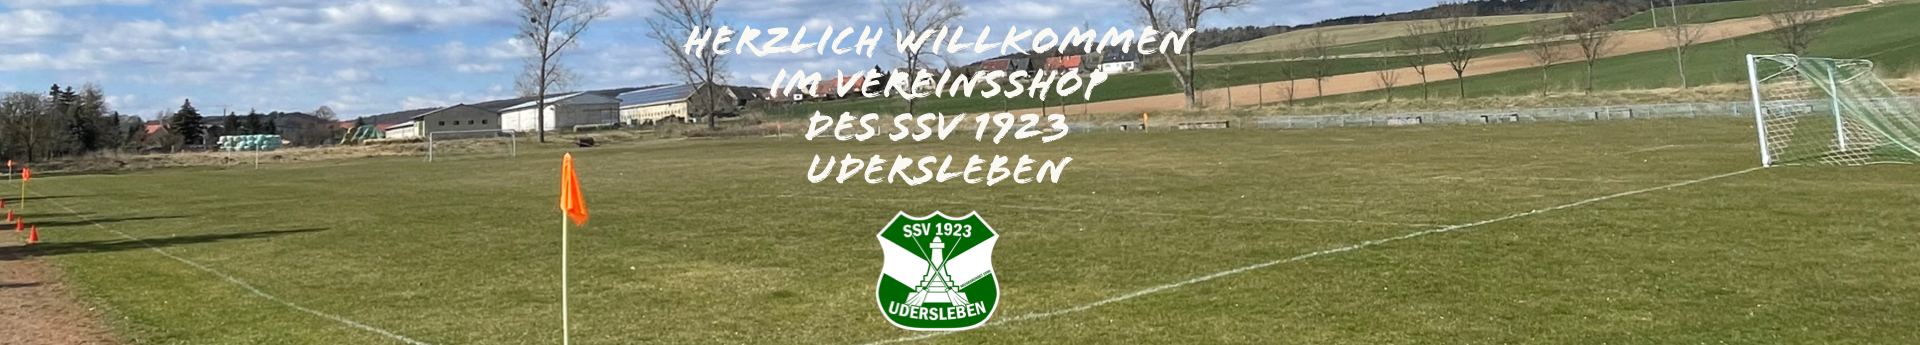 SSV 1923 Udersleben Title Image